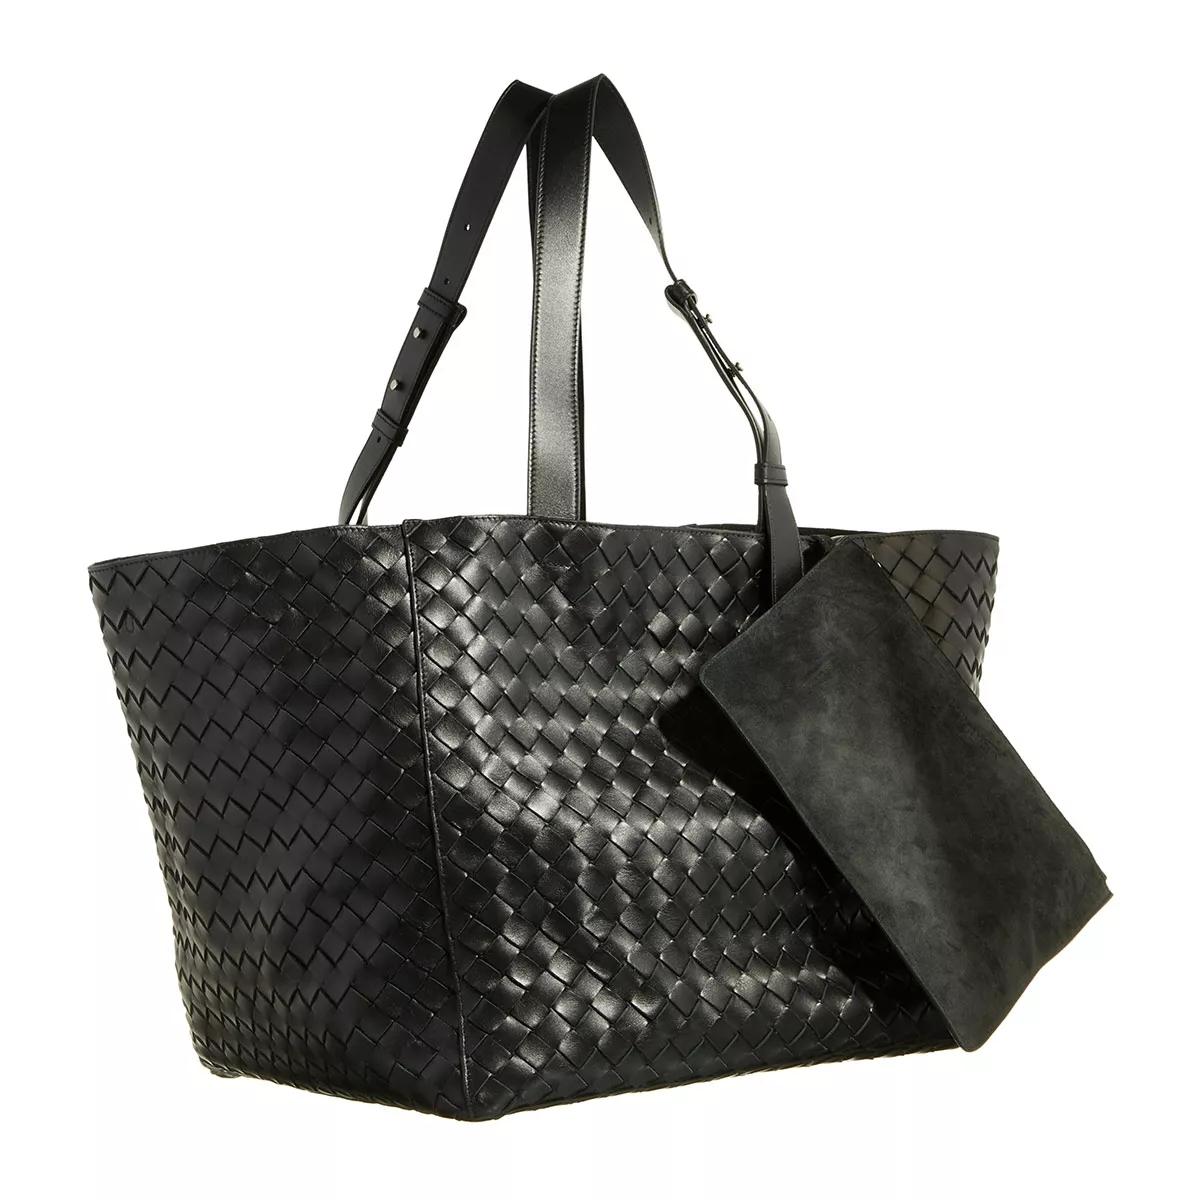 Bottega Veneta Shoppers Intrecciato Cube Tote Bag in zwart